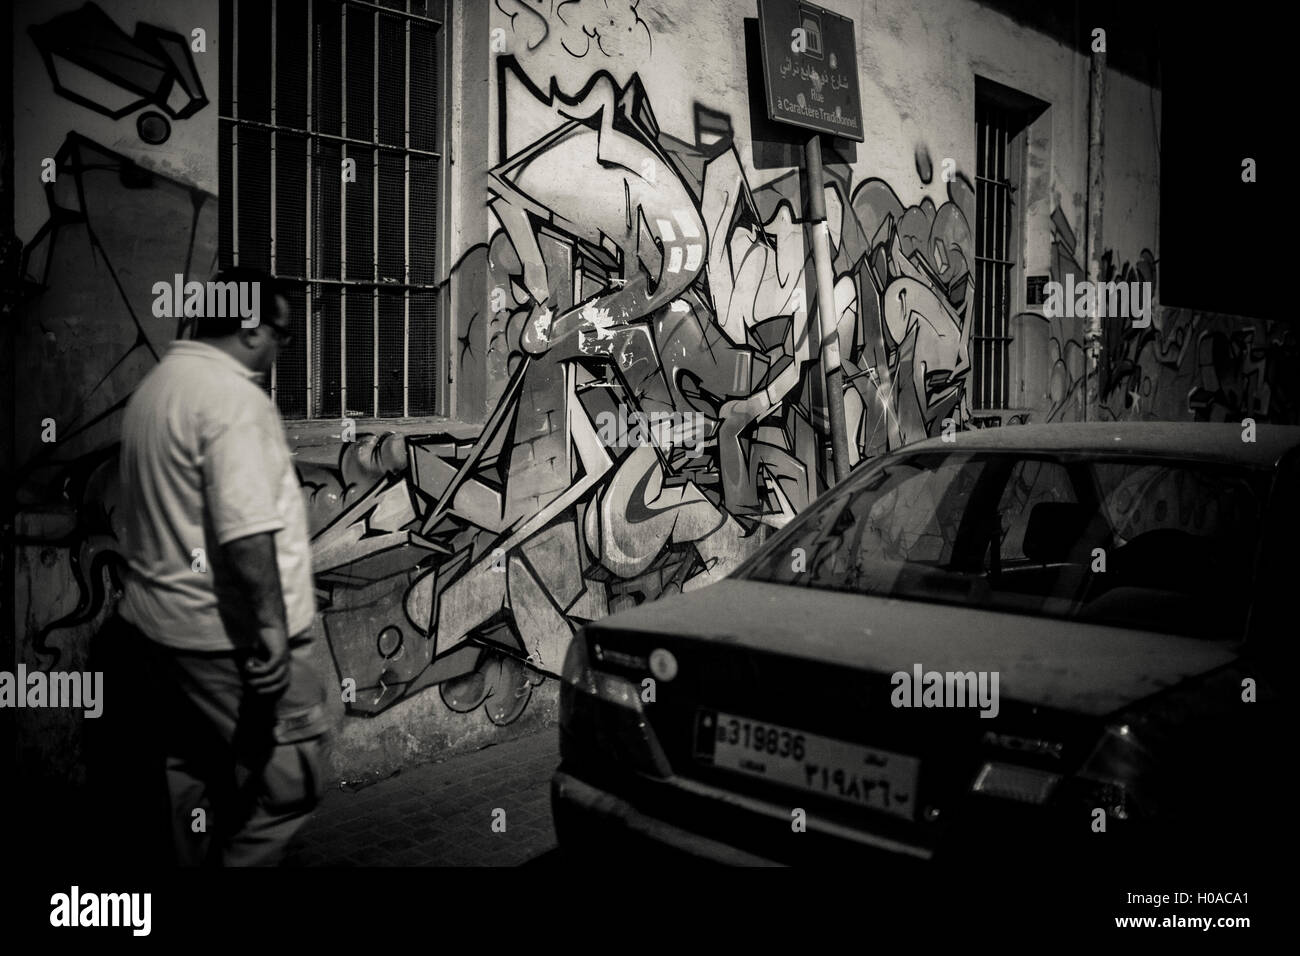 Les graffitis à Beyrouth - 10/08/2015 - Liban / Beyrouth - Gemayze, Beyrouth, août 2015. L'artiste graffiti français de renommée mondiale Reso. - Bilal Tarabey / Le Pictorium Banque D'Images